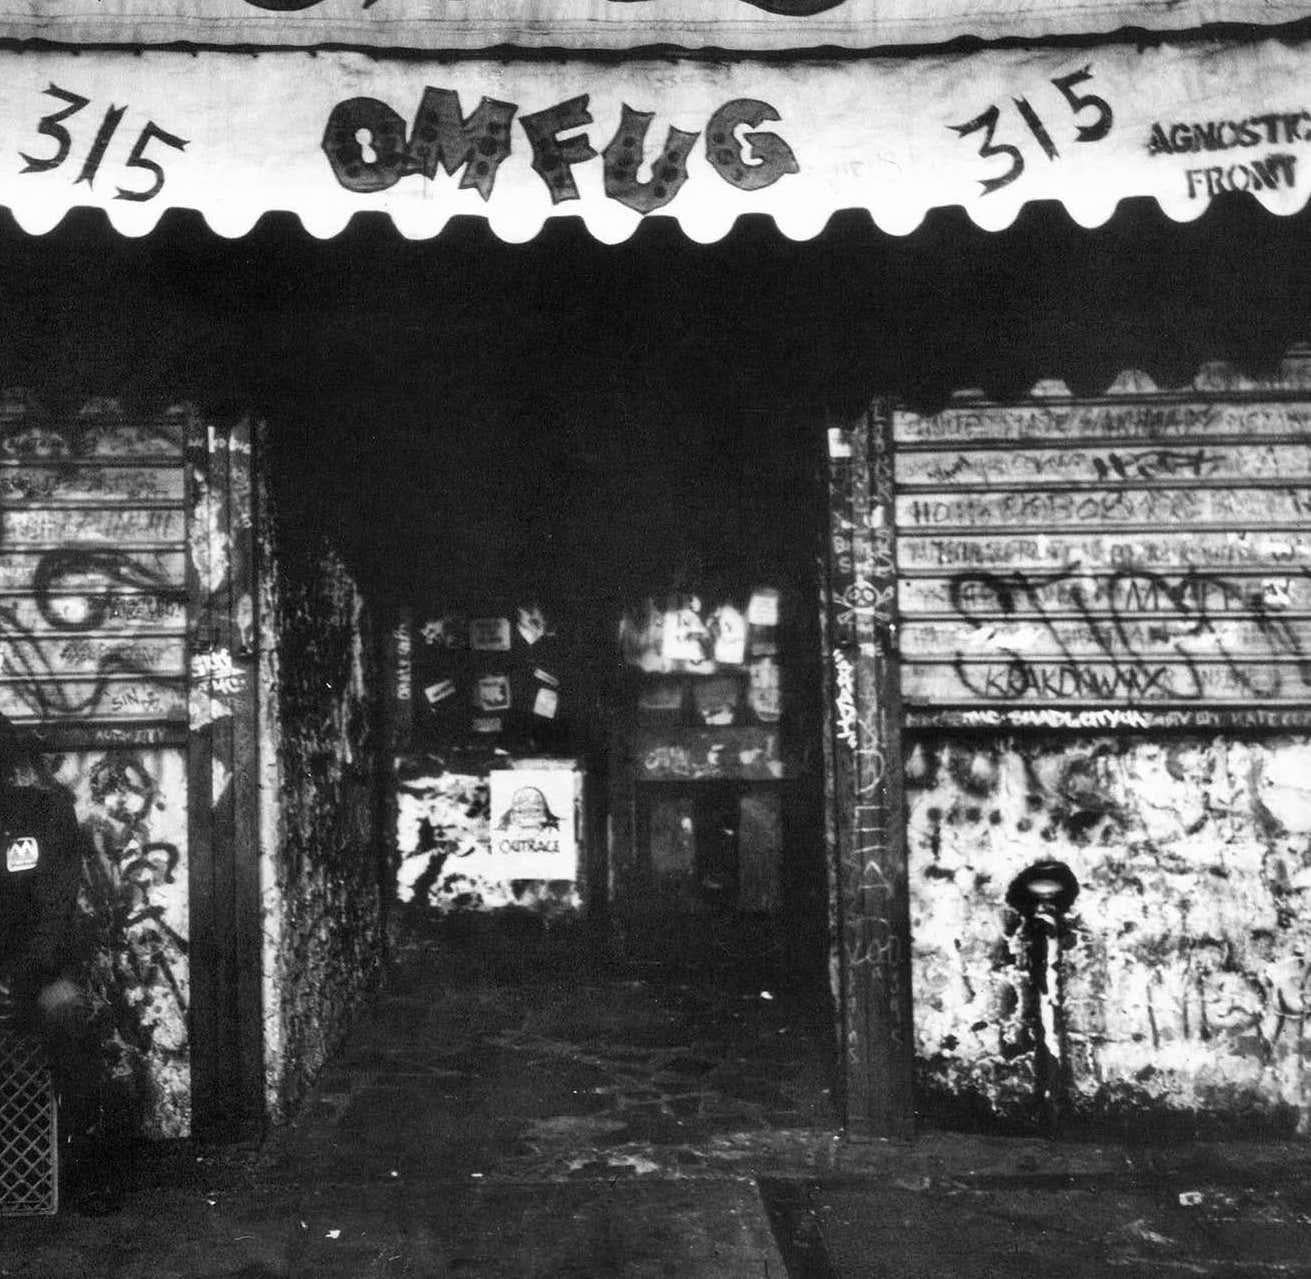 CBGB, die Geburtsstätte des Punk - festgehalten vom bekannten New Yorker Underground-Fotografen Fernando Natalici: Manhattan, ca. 1982

Archivträchtiger Tintenstrahldruck.
Abmessungen: 11 x 14 Zoll (voller Rahmen bis zu den Rändern bedruckt).
Verso